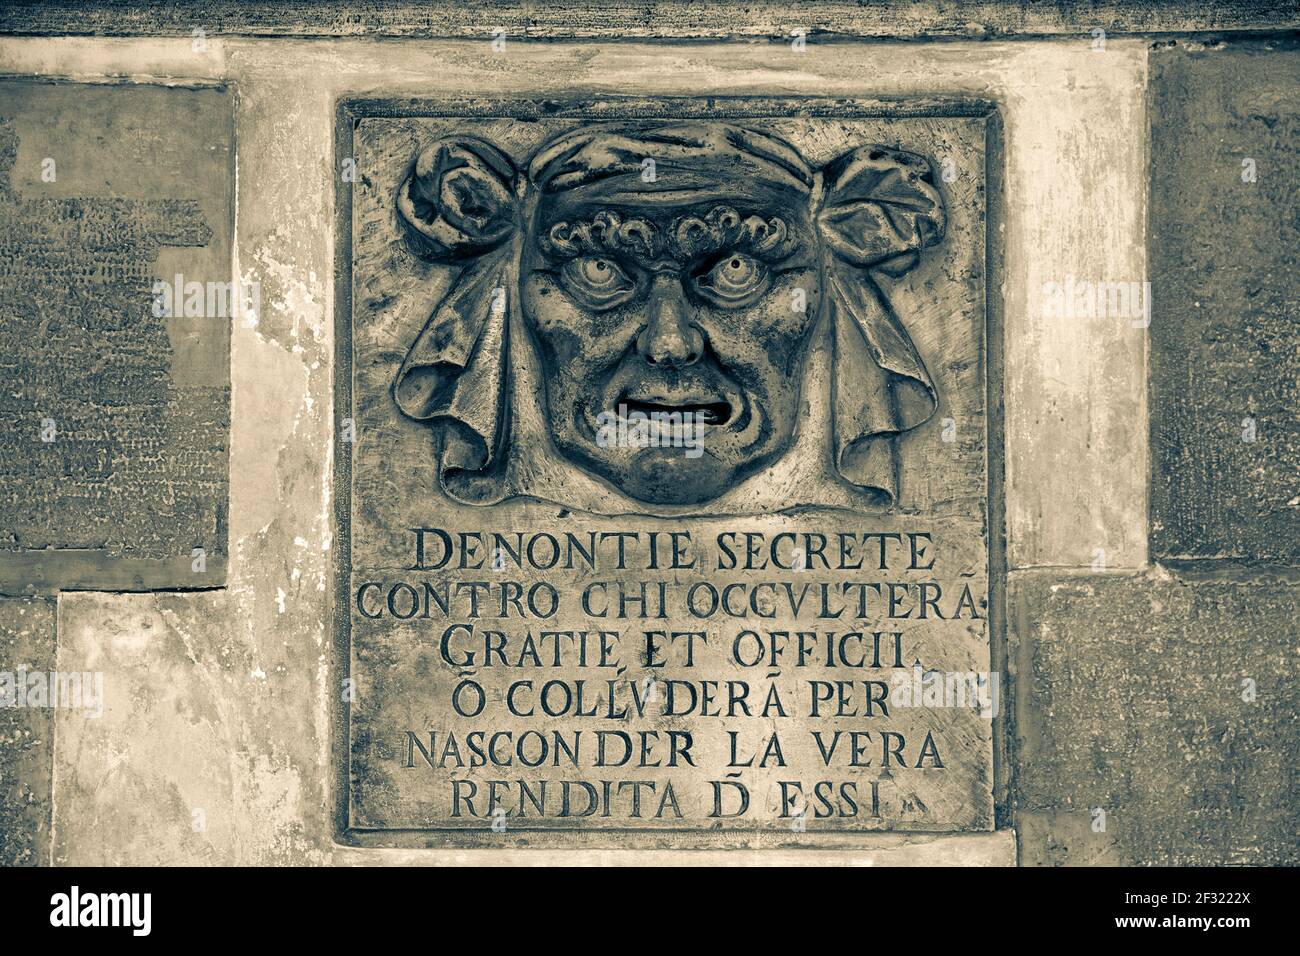 Italie,Venise,Doge's Palace, un bocca di leone utilisé pour dénoncer les fraudeurs d'impôt Banque D'Images